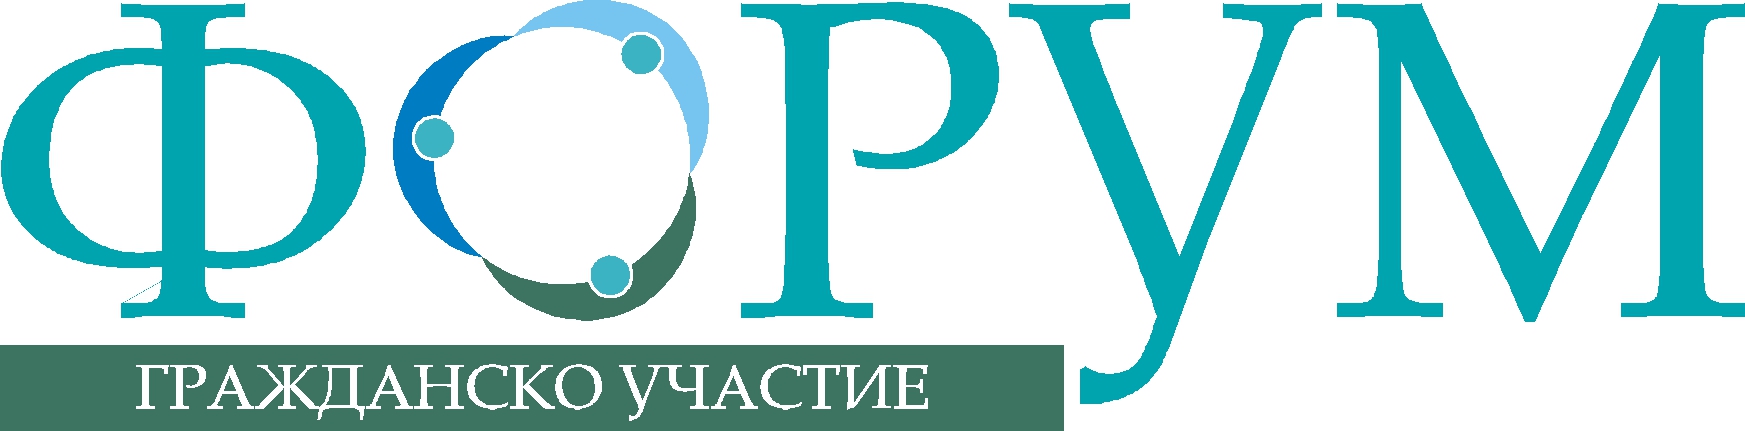 Промени в Постановление 160 на Министерски съвет благодарение на активна позиция на ФГУ, НМД и БЦНП